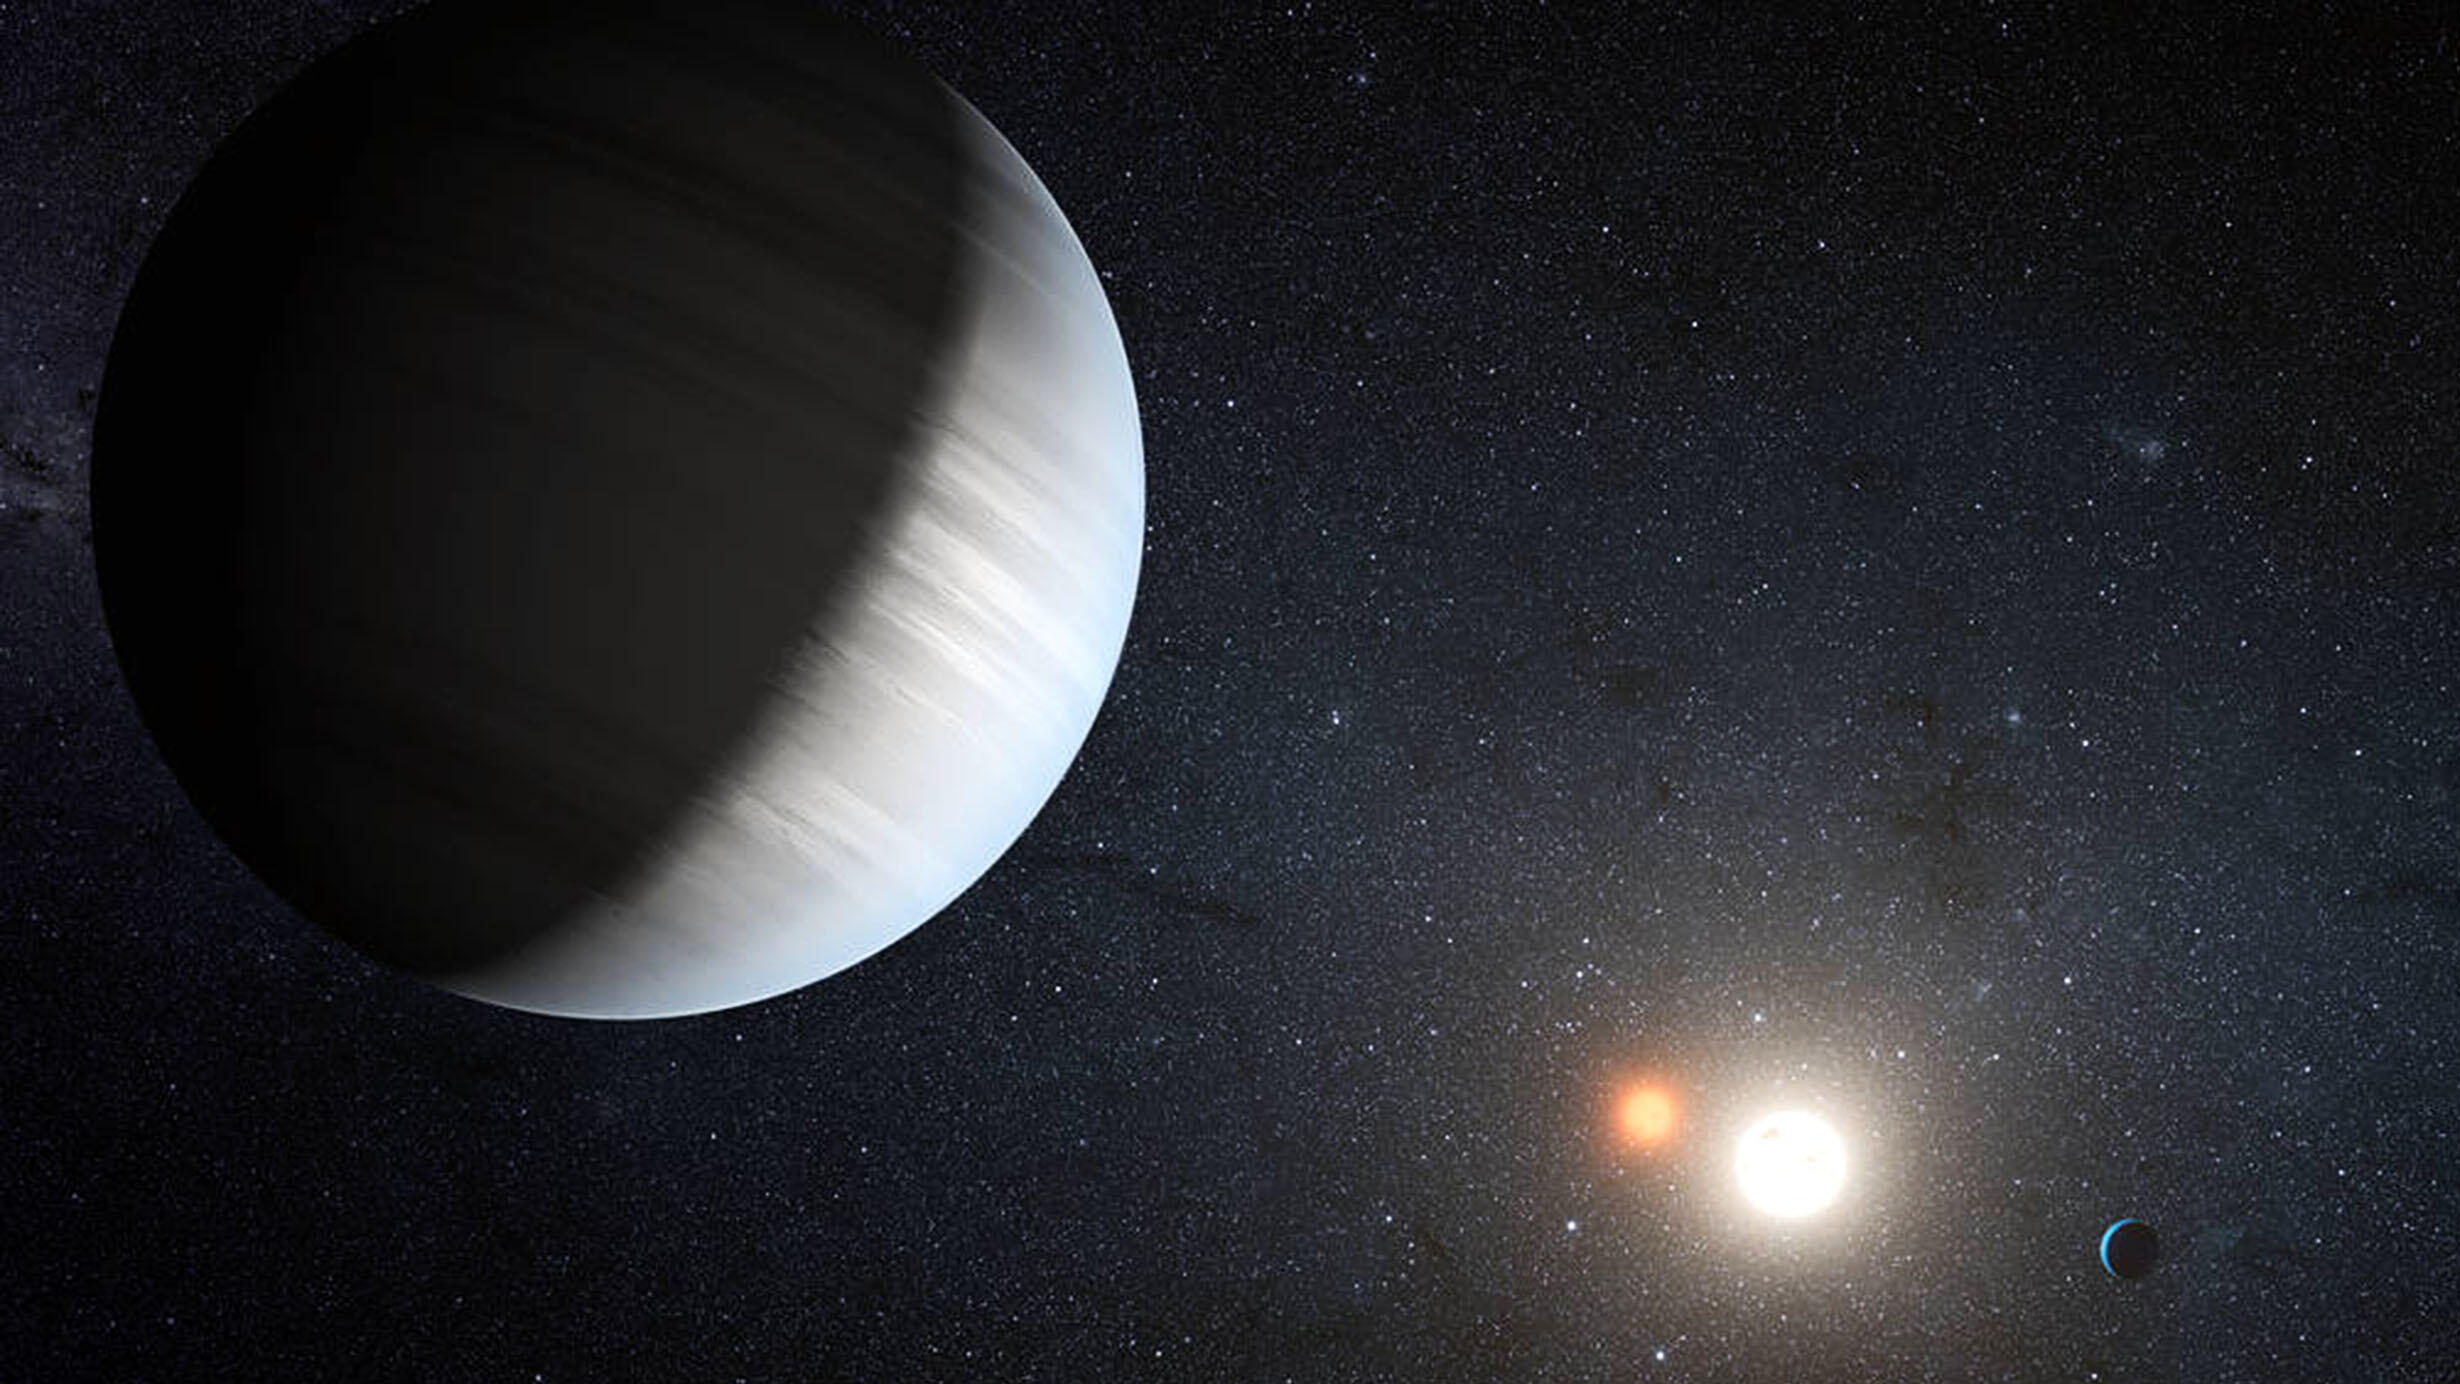 kepler-47-exoplanet-illustration-2460-1384